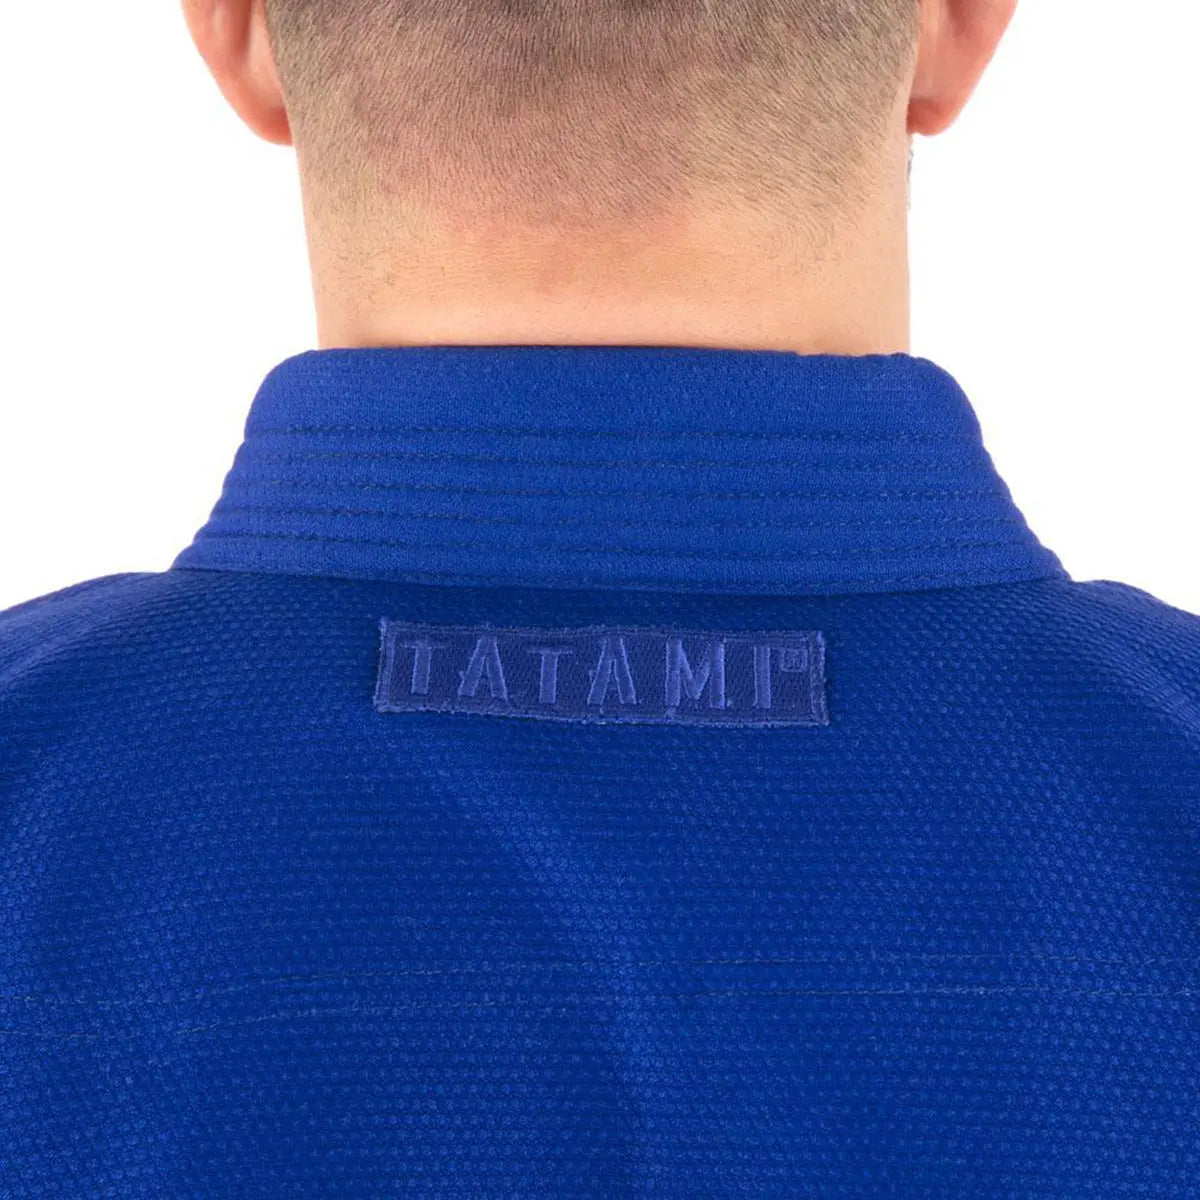 Tatami Fightwear Classic BJJ Gi - Blue Tatami Fightwear